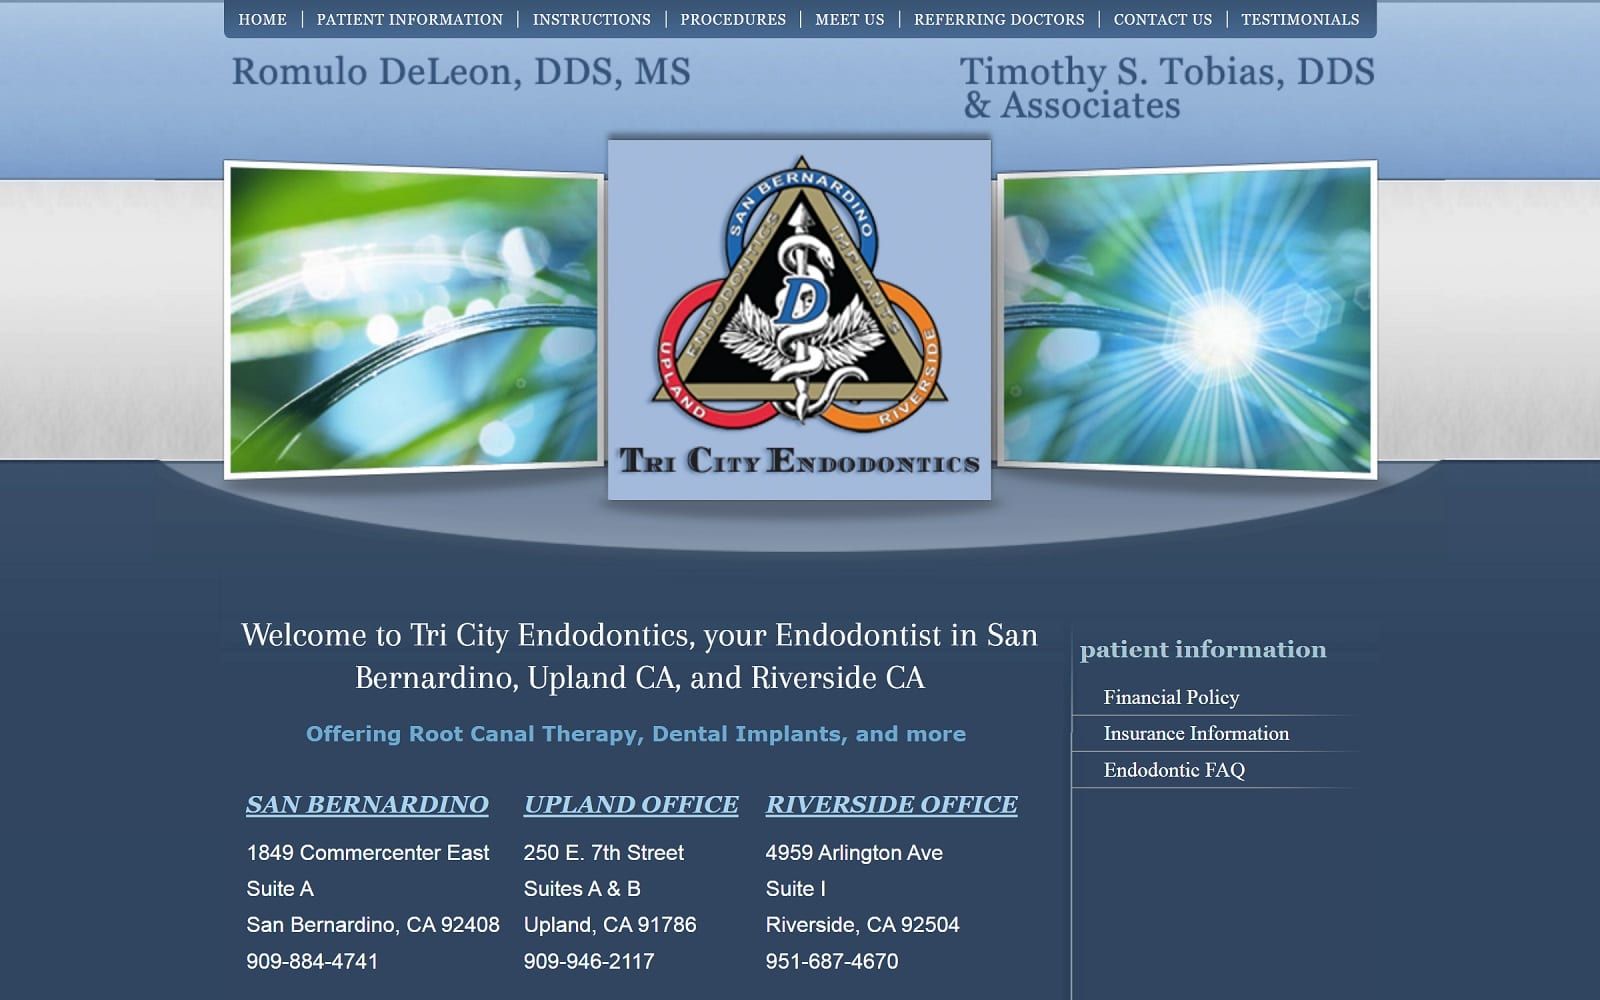 The Screenshot of Tri City Endodontics tricityendodontics.com Dr. Romulo de Leon Website